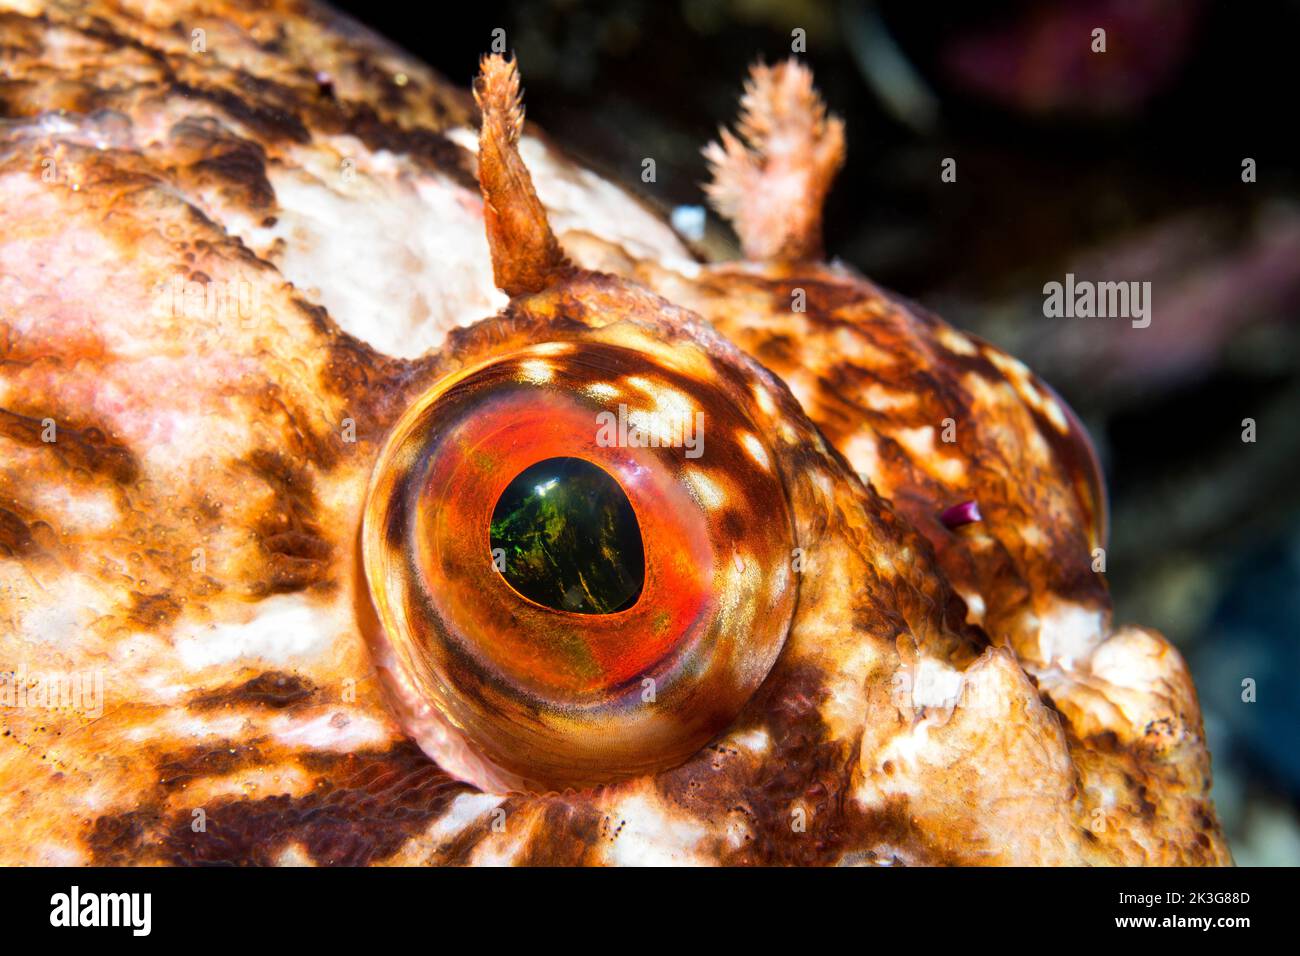 Primo piano dell'occhio di un curioso cabezon pesce in acqua fresca della California come si siede fermo come io sollevo la mia macchina fotografica per scattare la sua foto. Foto Stock